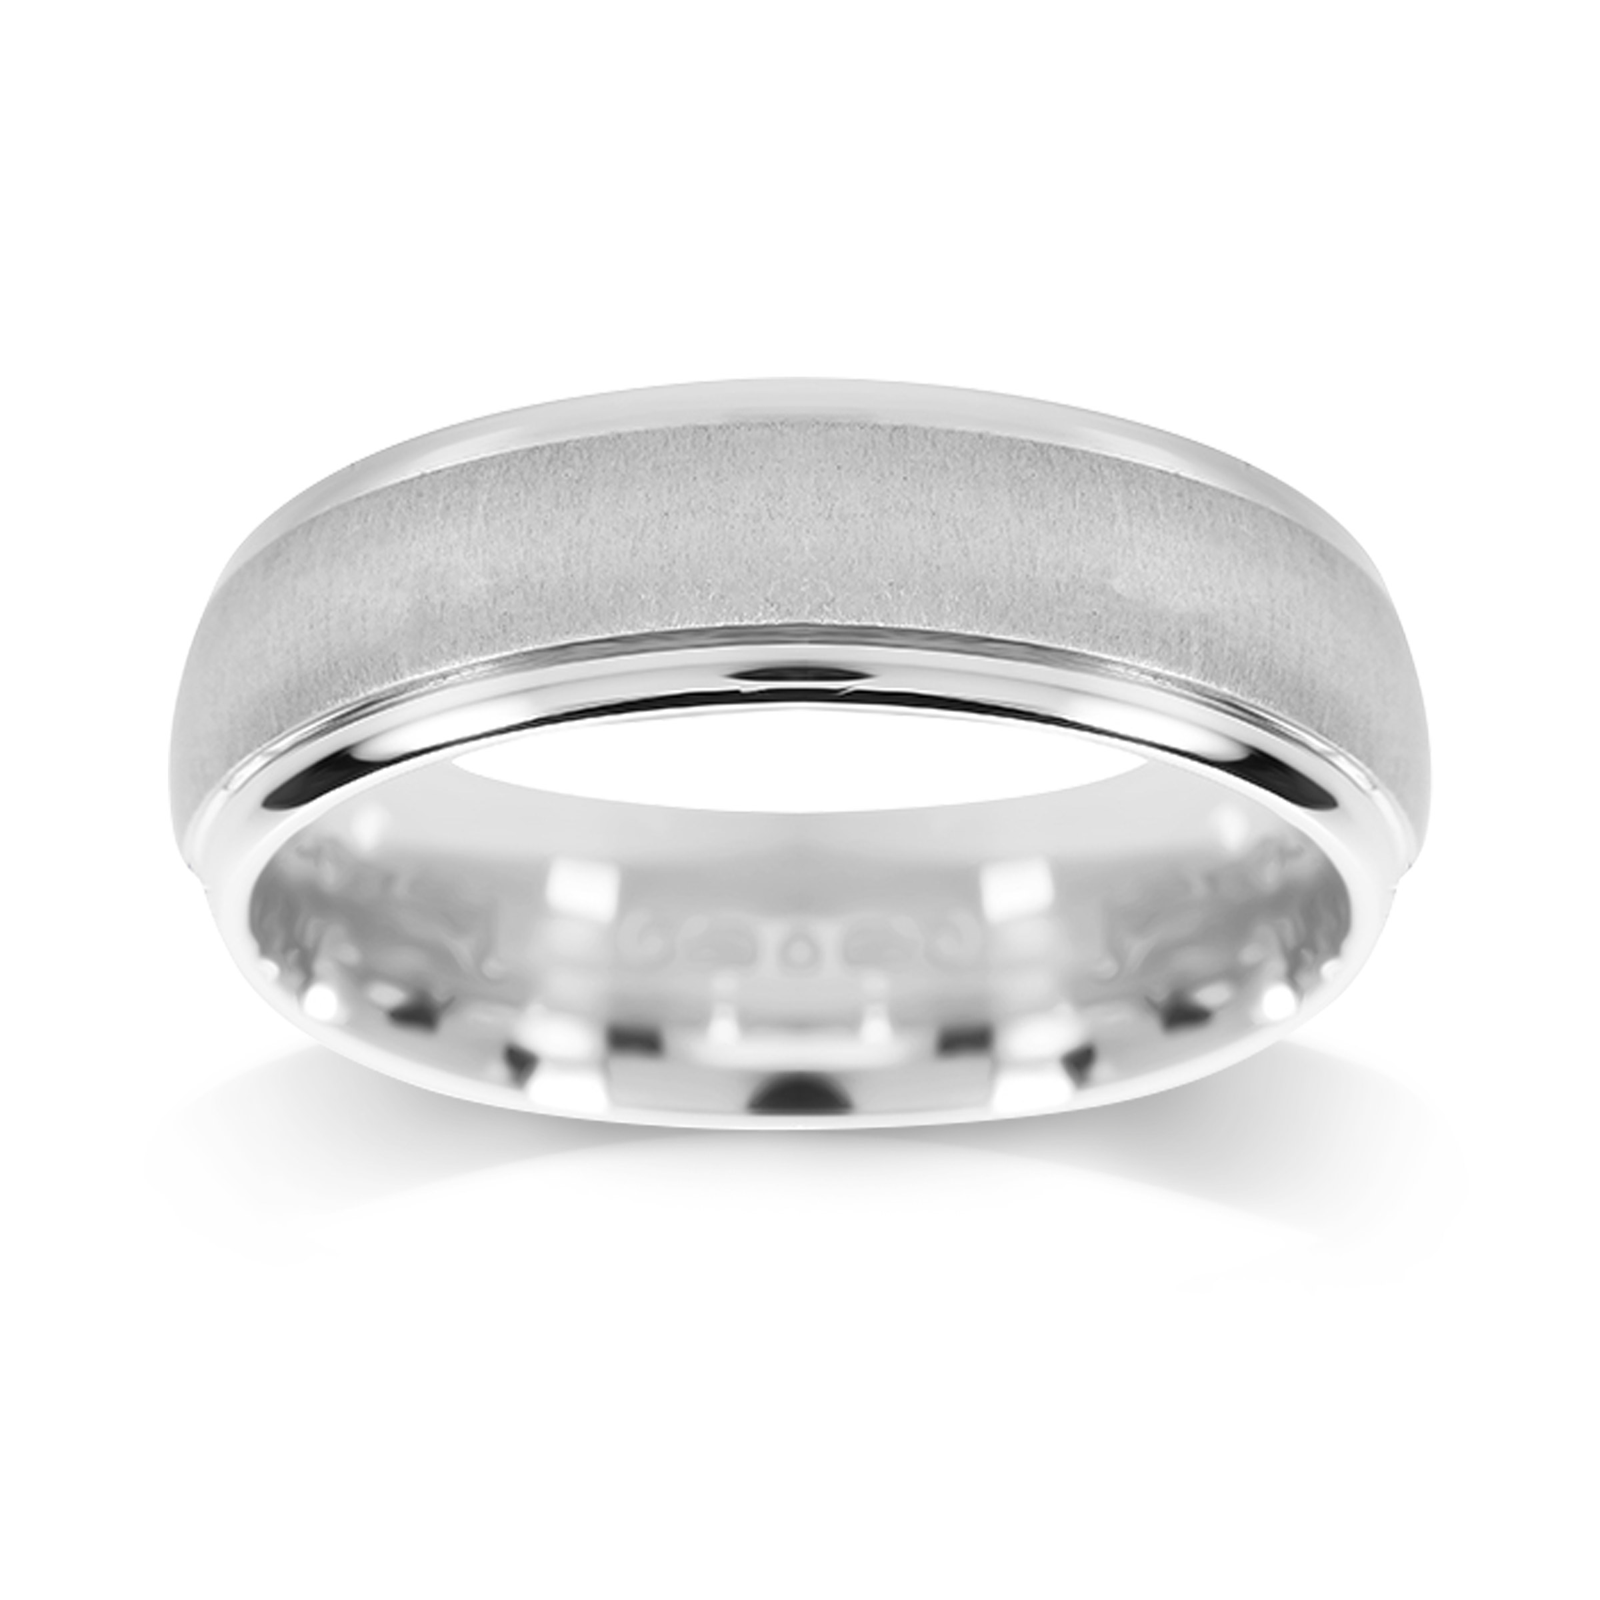 Platinum 5.5mm Brushed & Polished Edge Wedding Ring | Rings | Jewellery ...